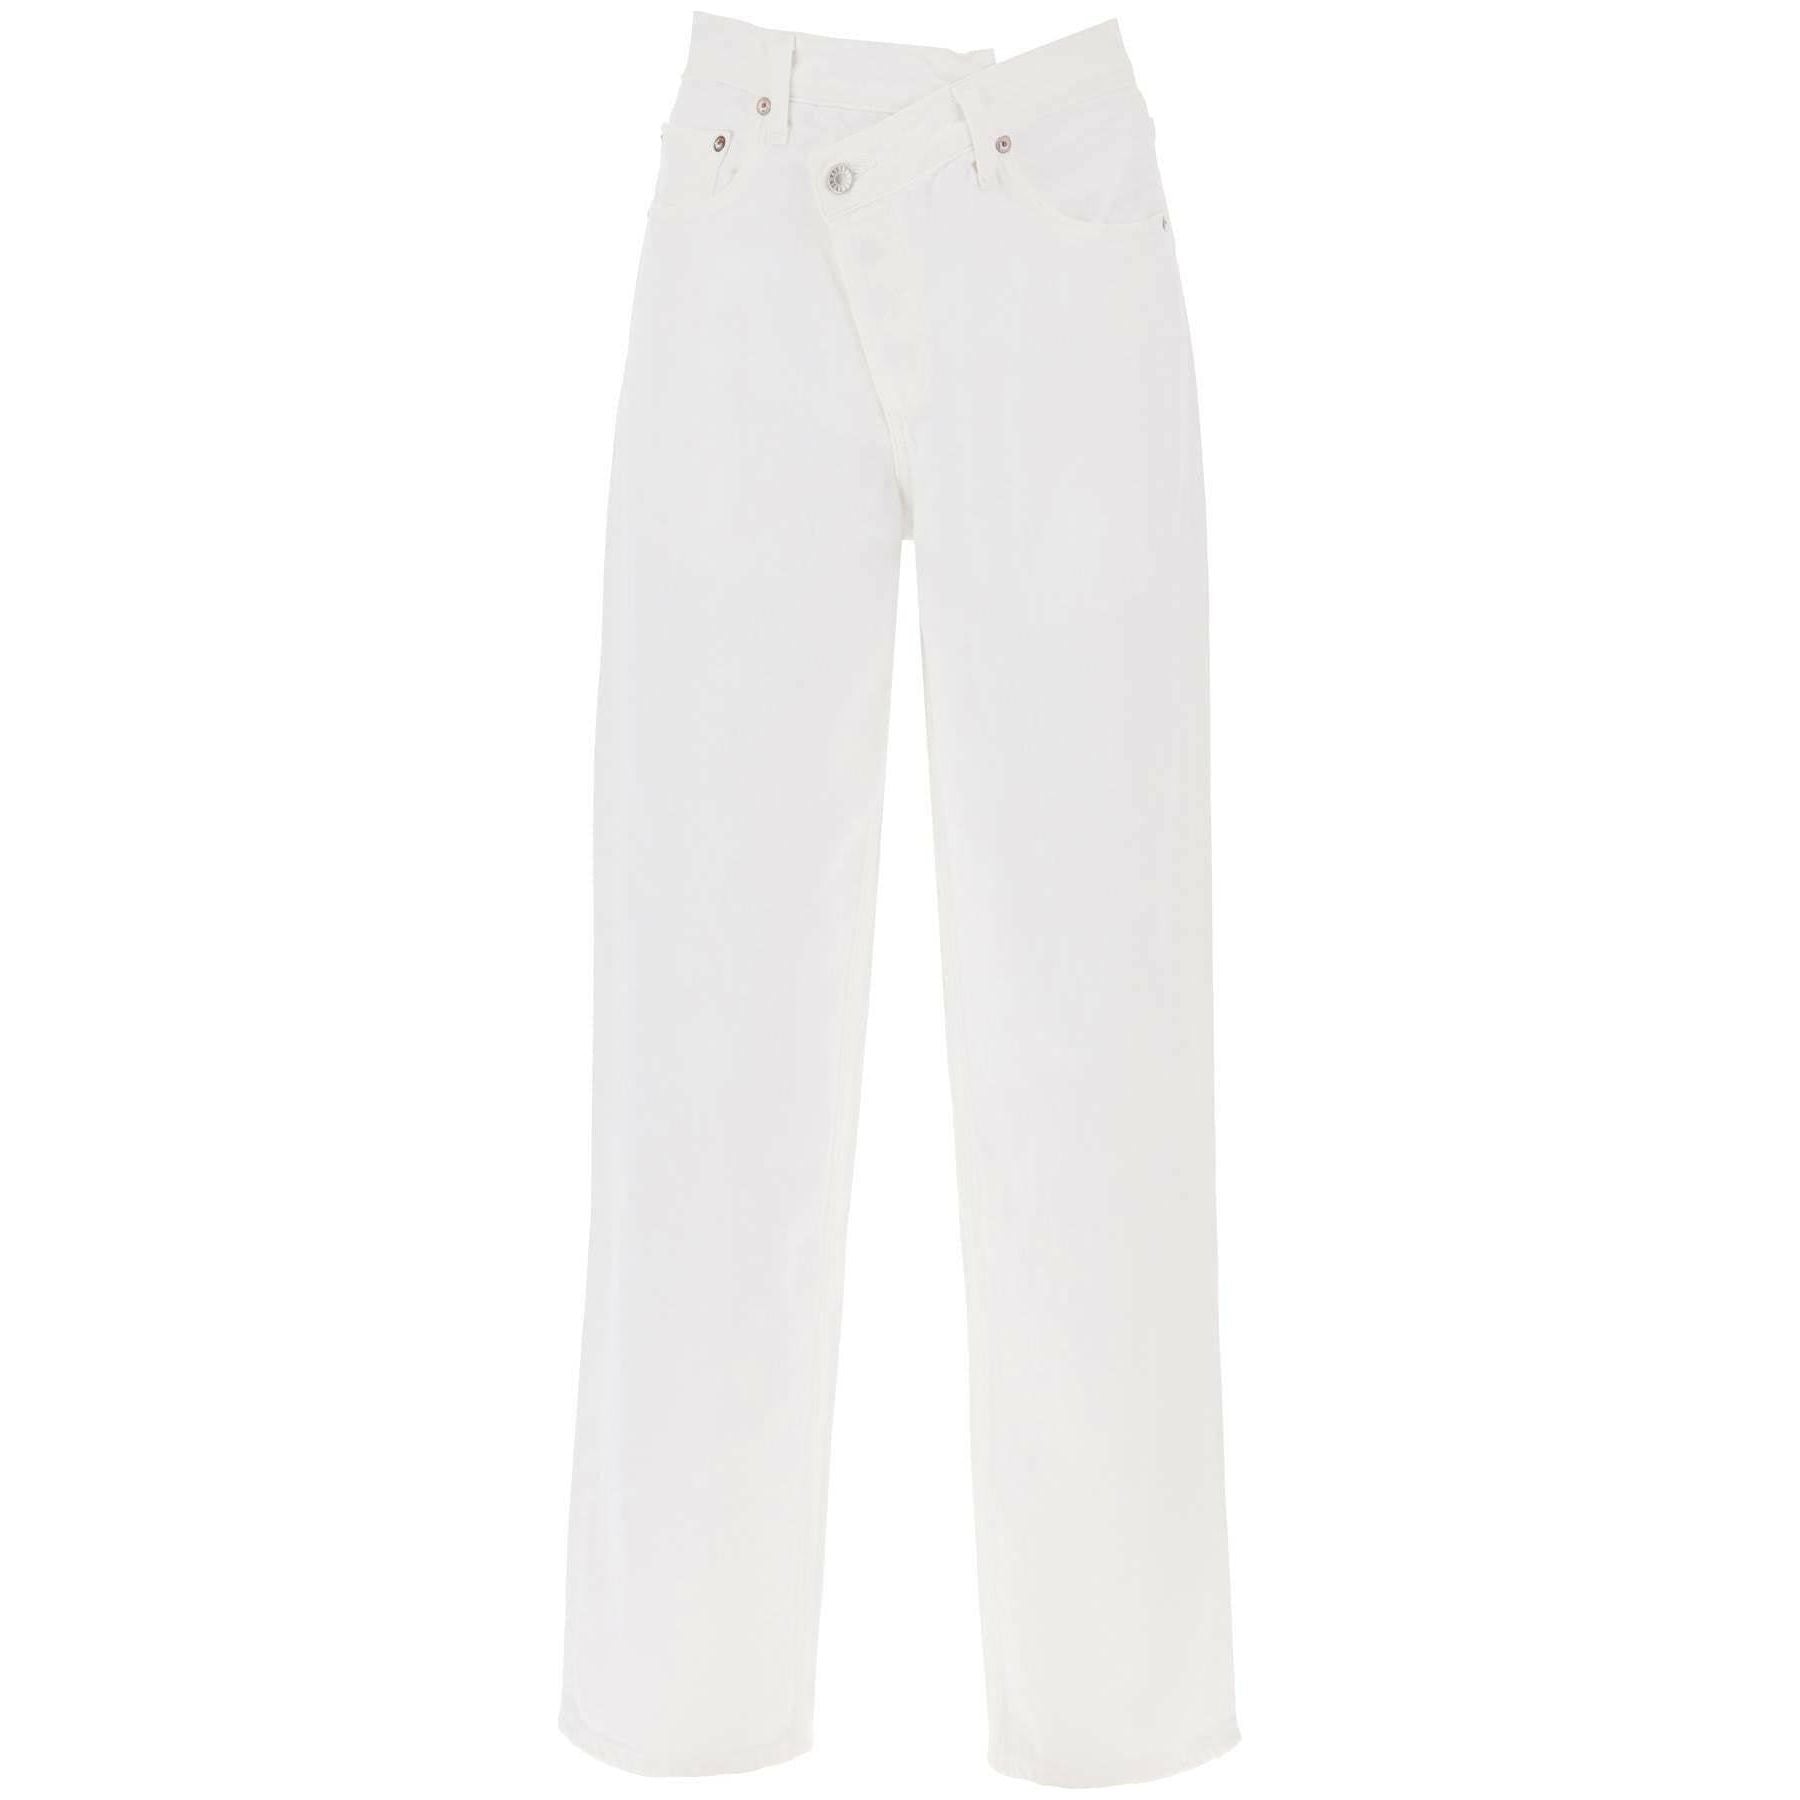 White Criss Cross Organic Cotton Jeans in Milkshake AGOLDE JOHN JULIA.